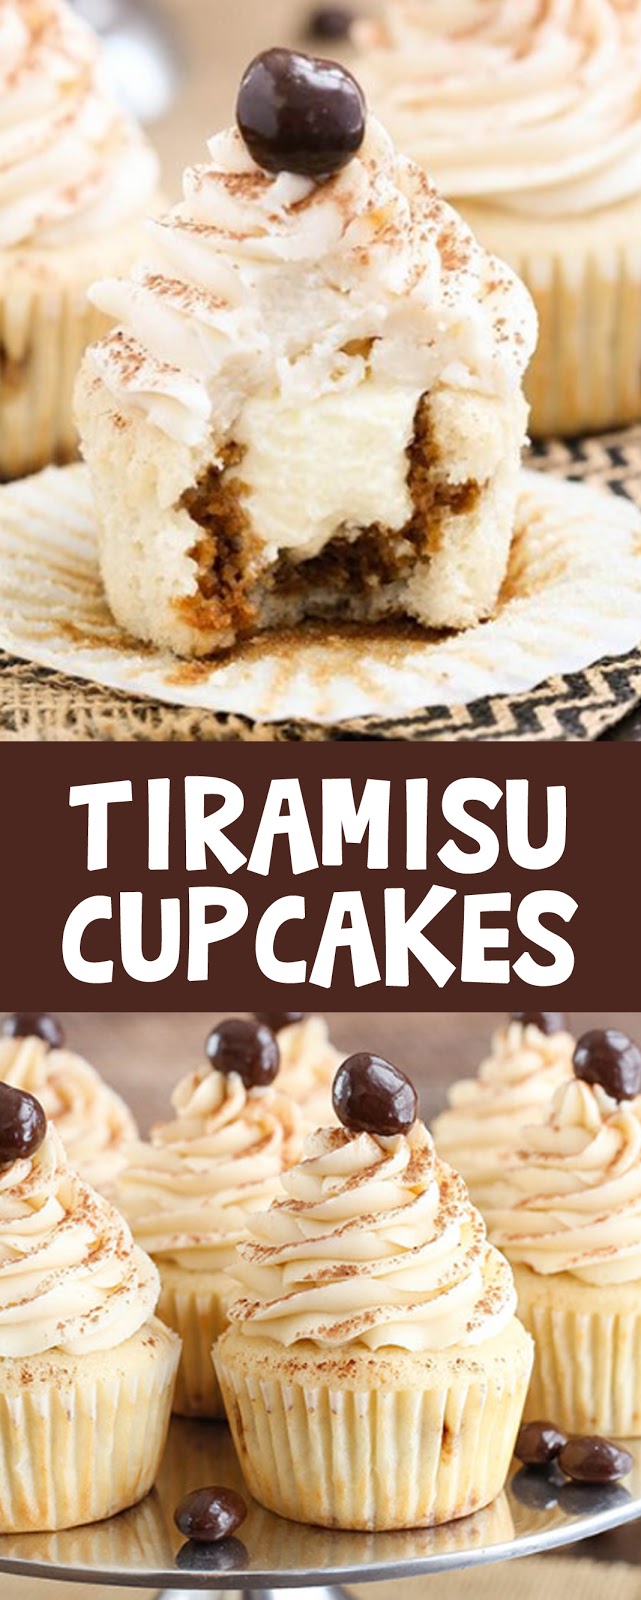 TIRAMISU CUPCAKES - House Recipes &amp; Home Decor